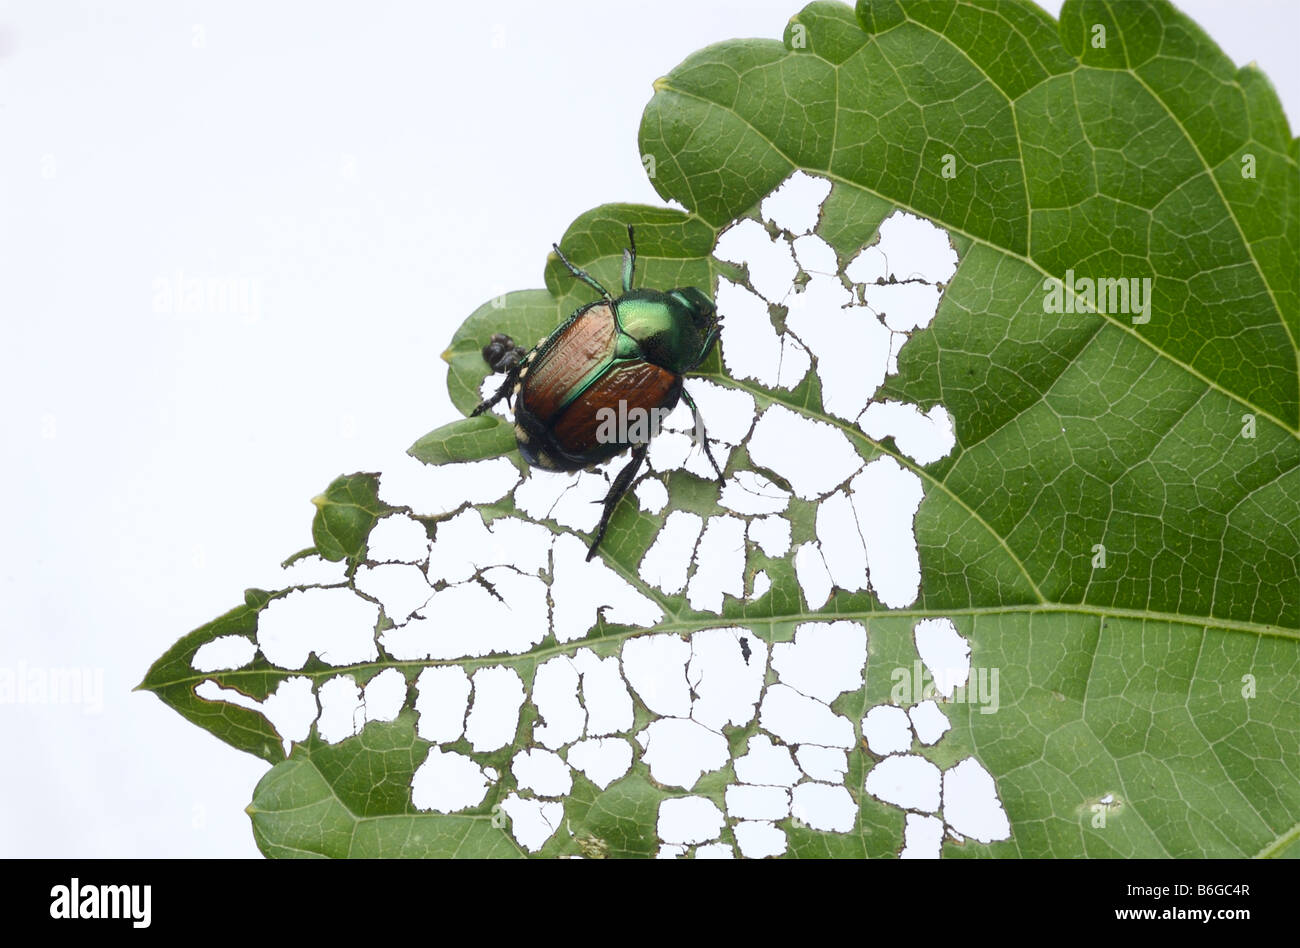 Japanische Käfer schädigt ein grünes Blatt in ein charakteristisches lacy Aussehen durch durch das Kauen die Fläche zwischen den Adern. Stockfoto